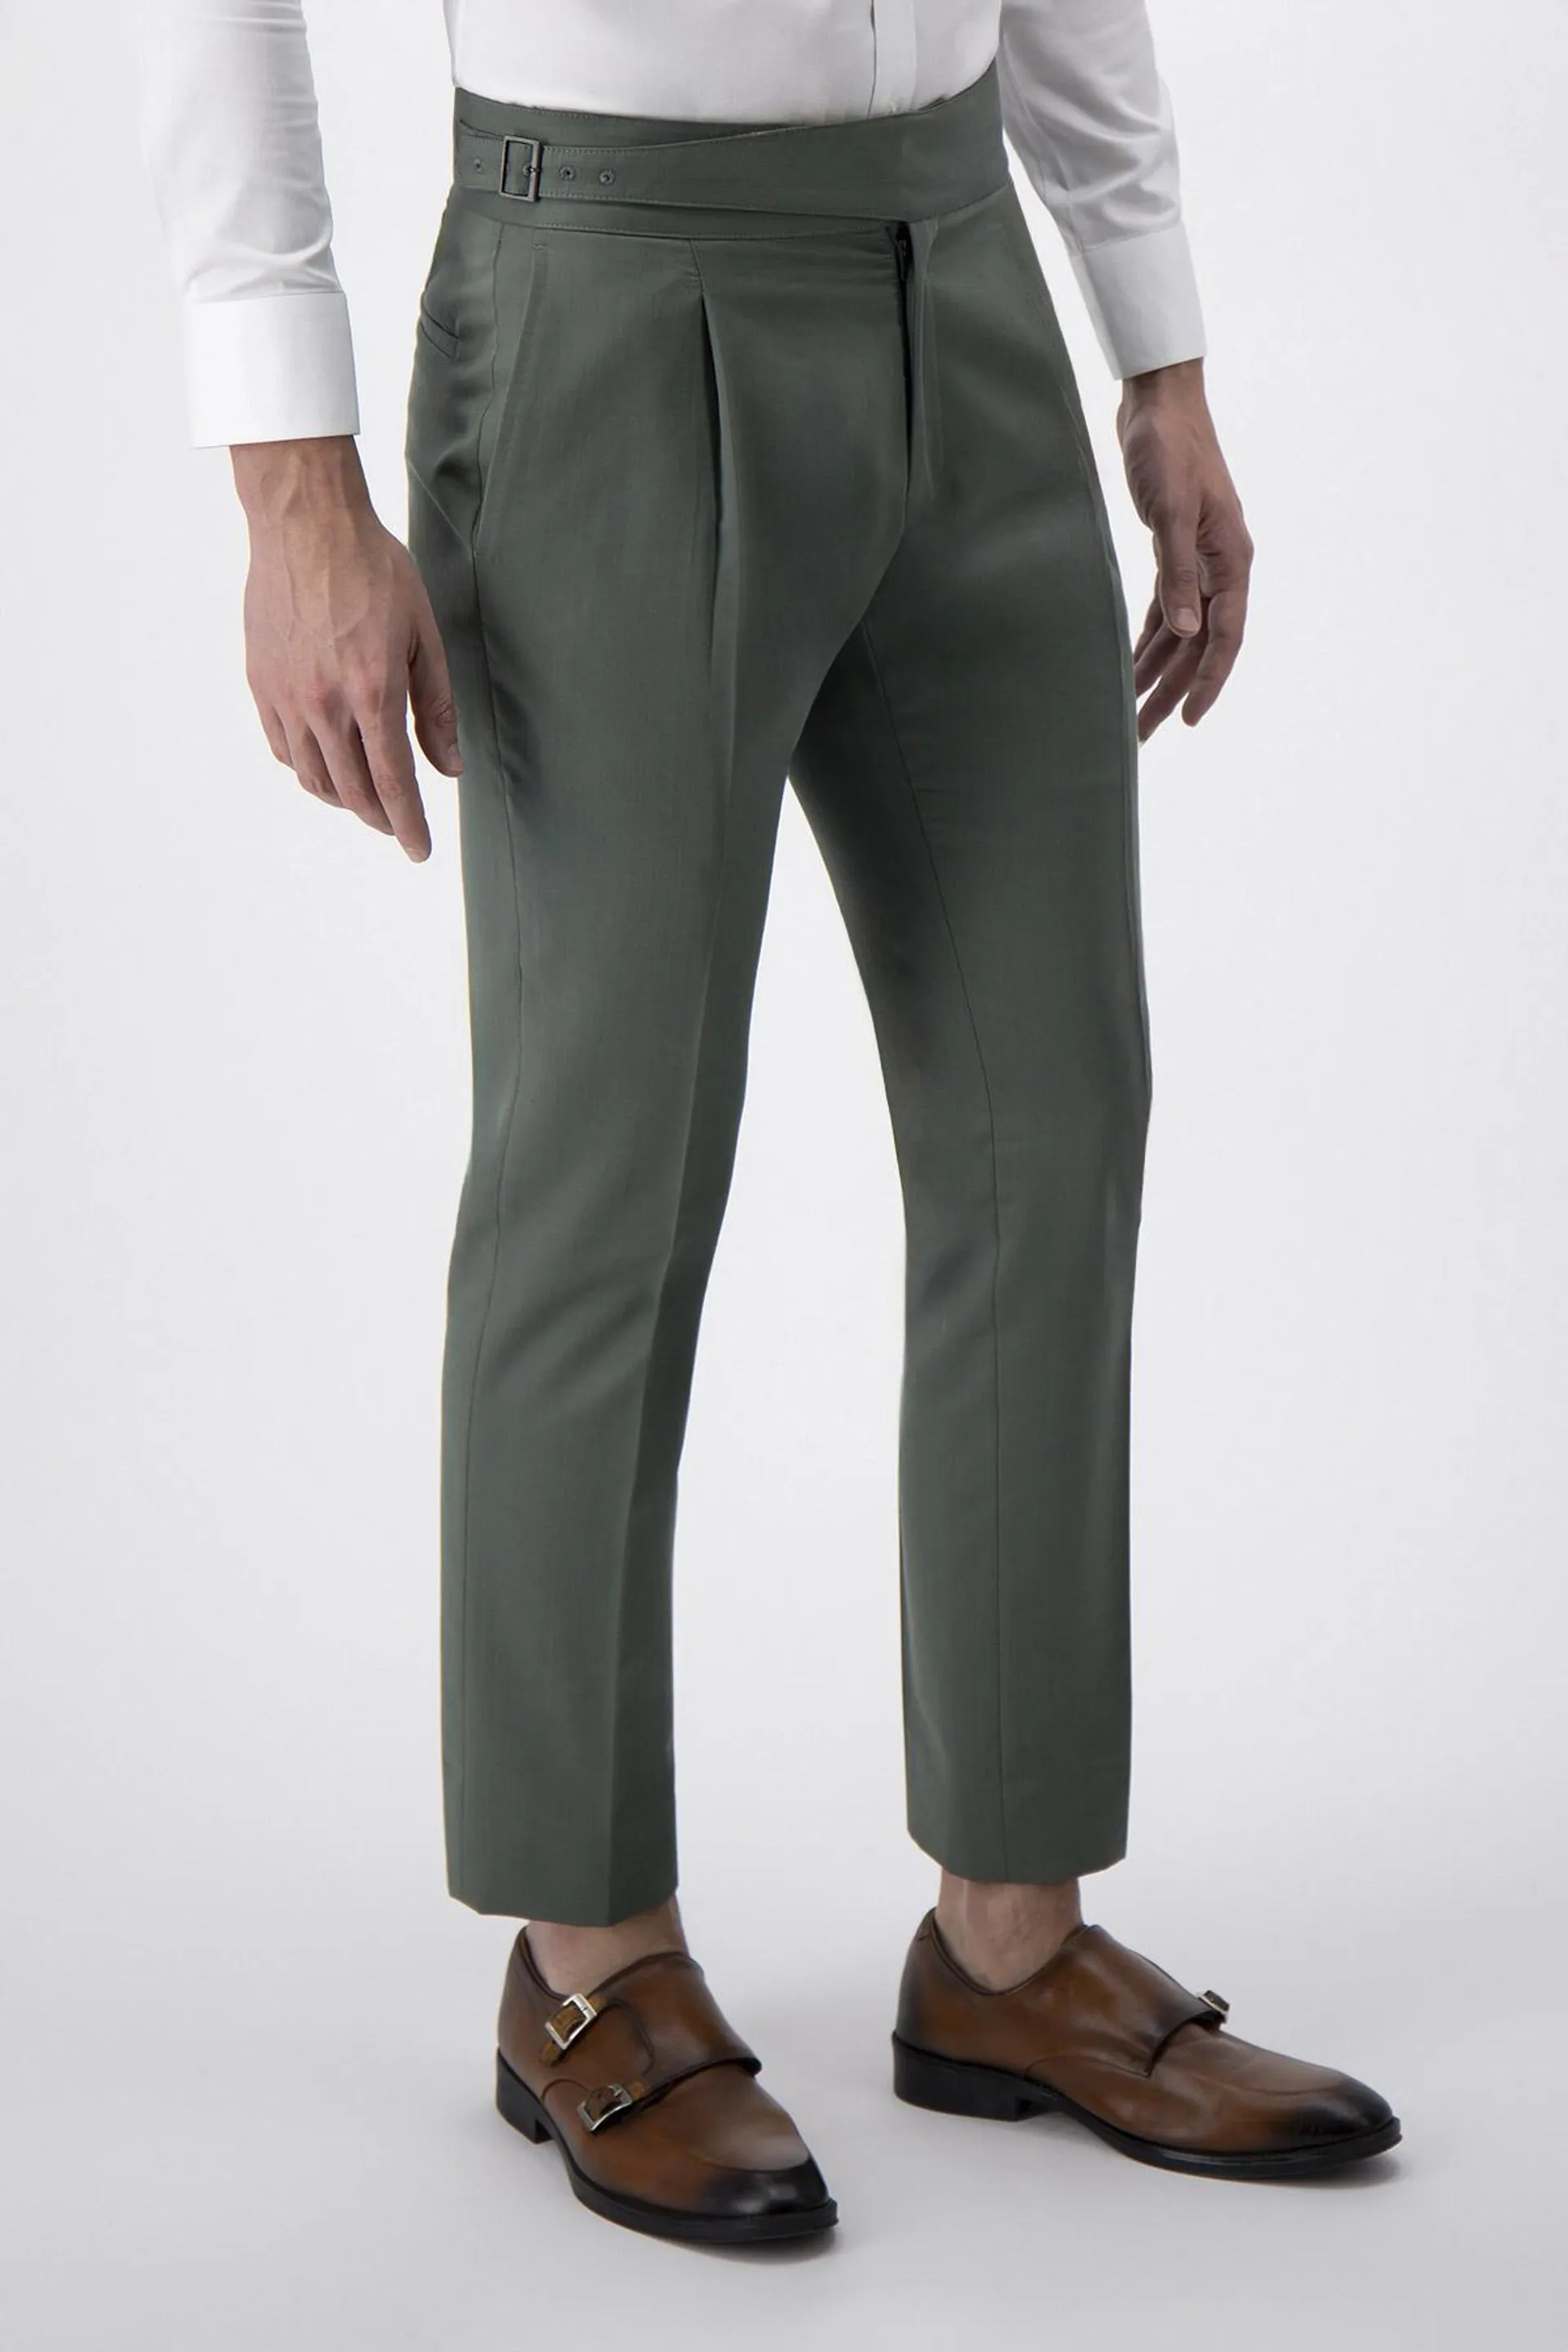 Pantalón Formal Calderoni Verde Slim Fit